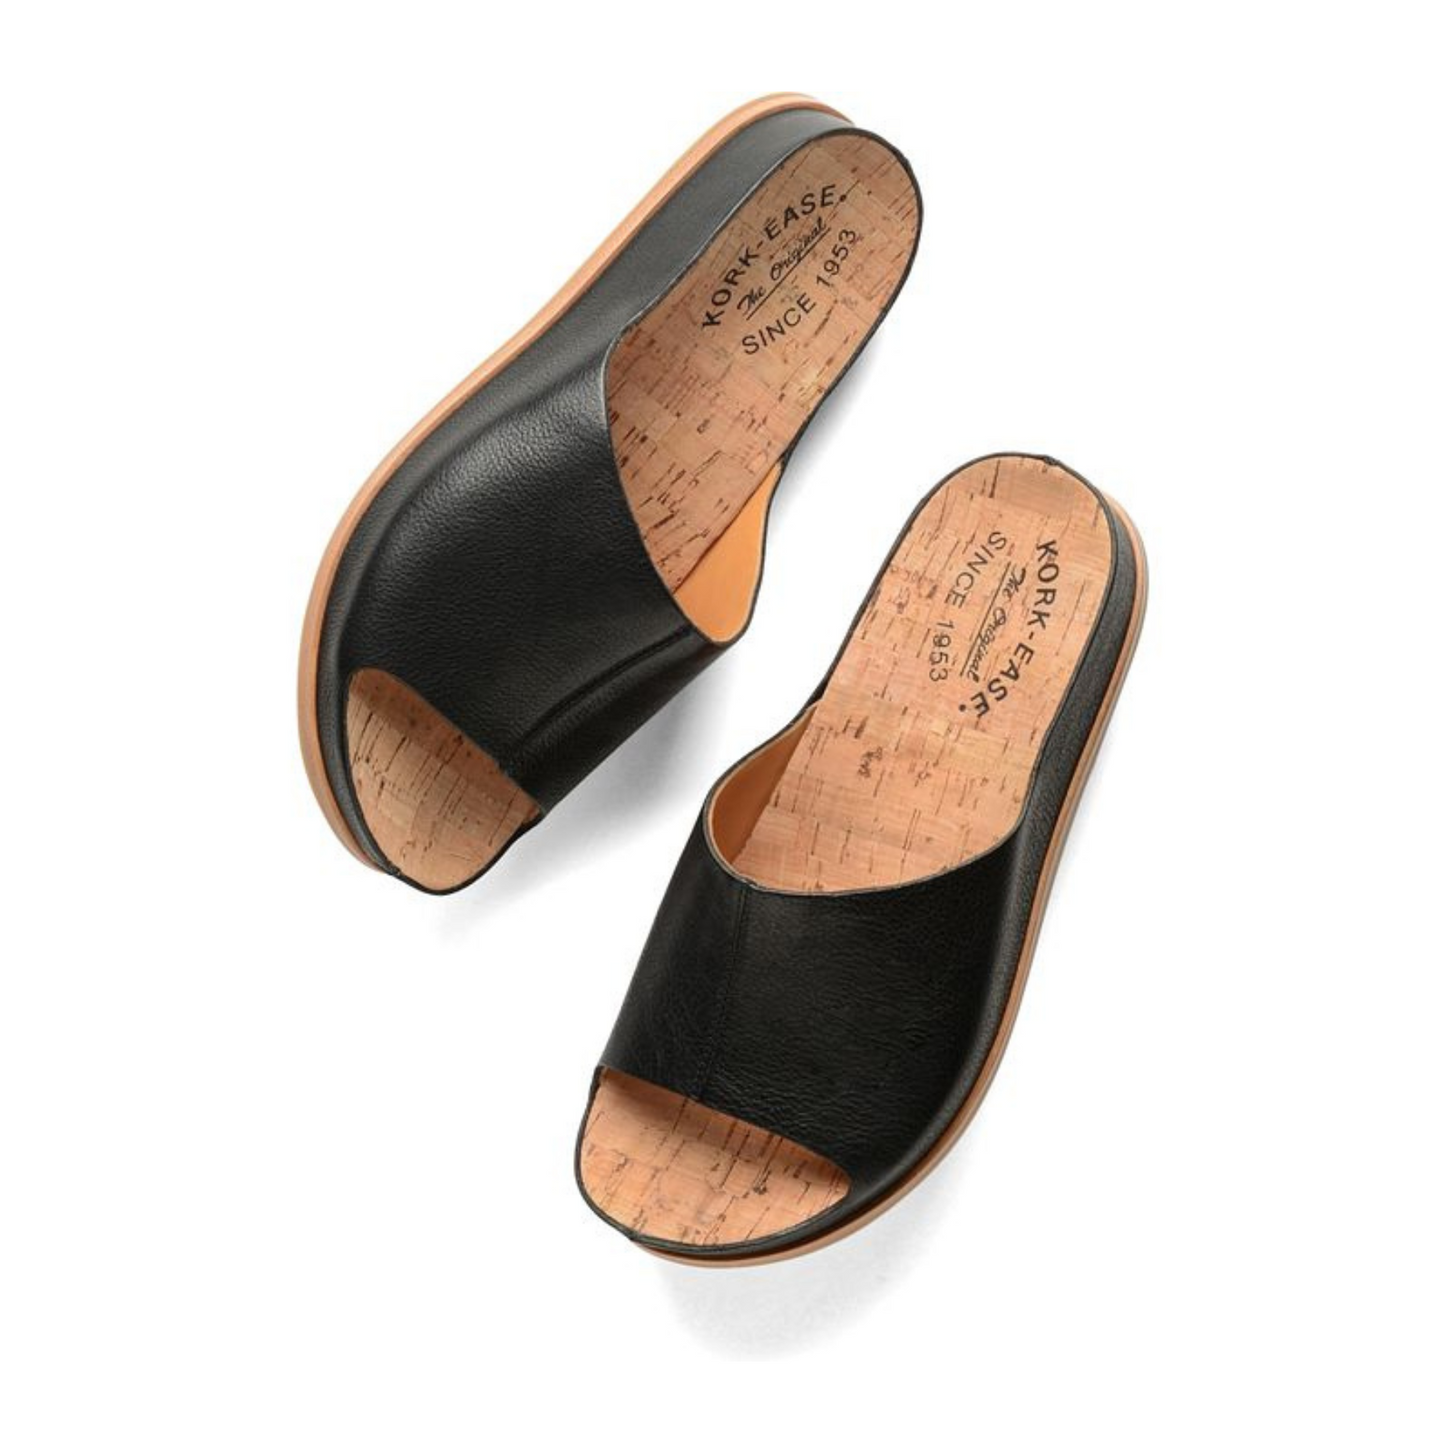 The black leather Tutsi Slide Sandal by Kork-Ease